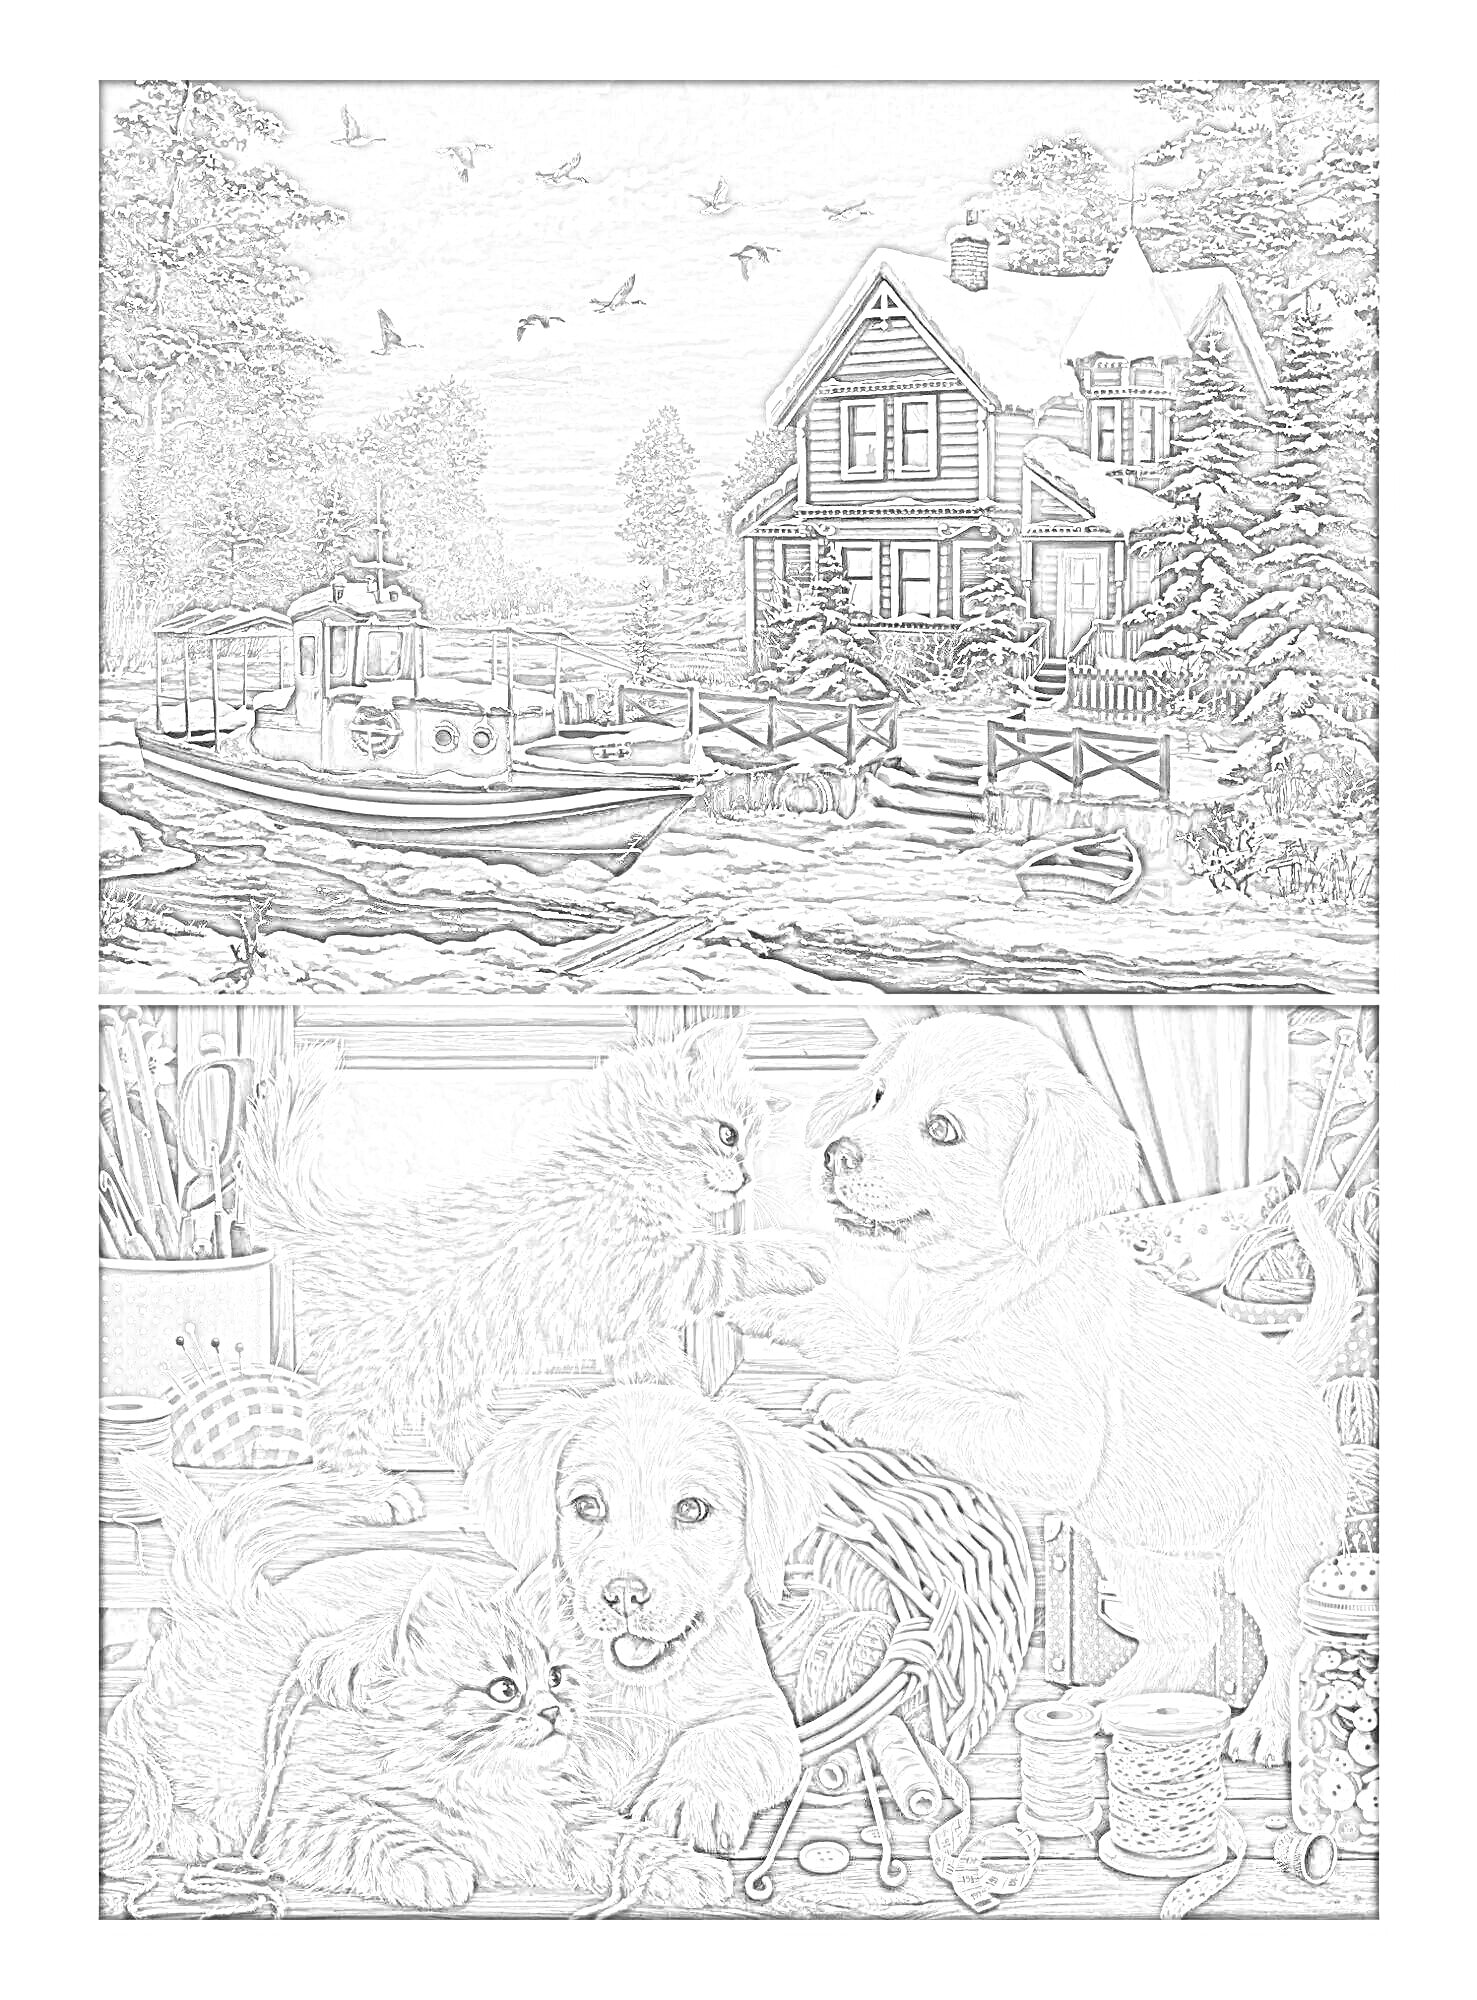 РаскраскаЗимний пейзаж с домом и лодкой; котенок и щенки играют с пряжей в комнате